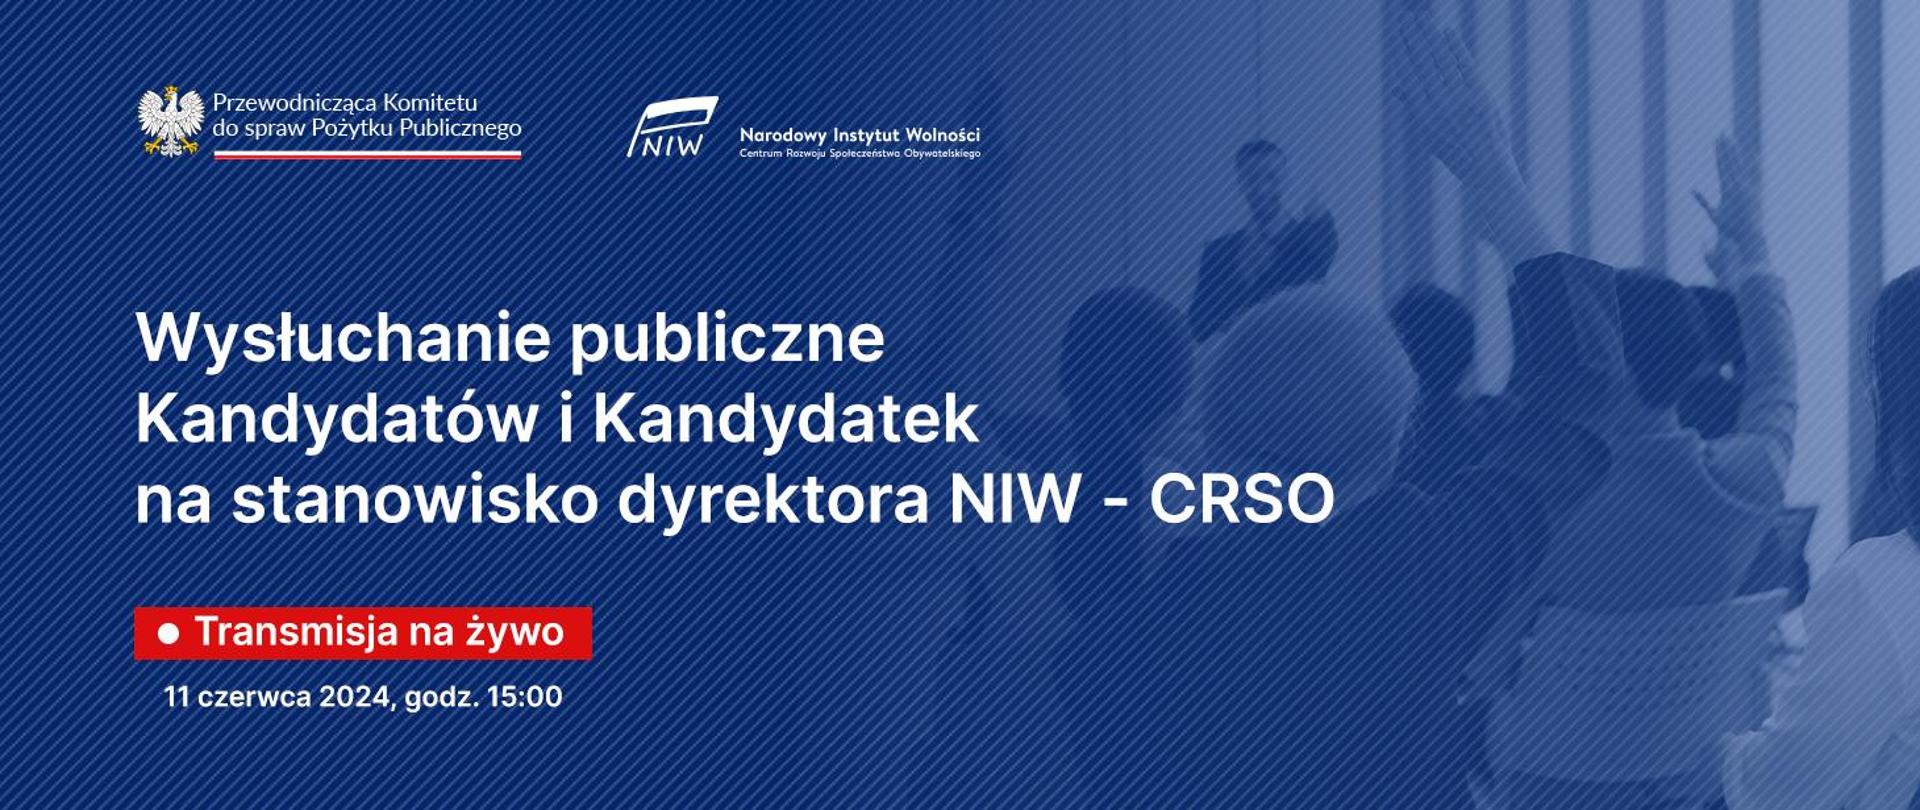 Wysłuchanie publiczne Kandydatów i Kandydatek na stanowisko dyrektora NIW - CRSO